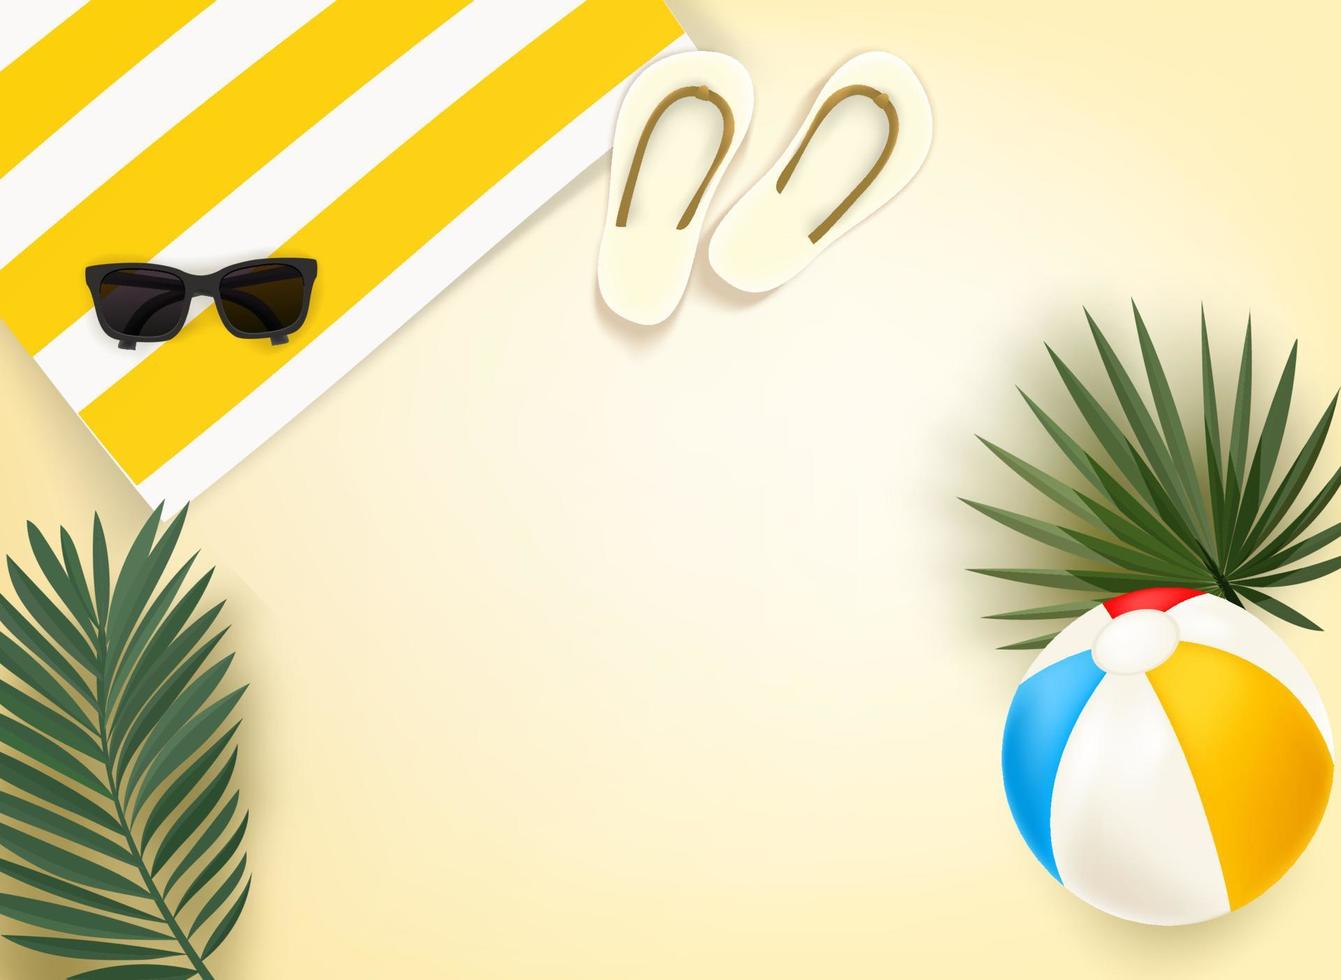 reizigers dingen op een strand. zonnebril, handdoek met strepen, strandbal, palmbladeren en pantoffels op een zand. 3D-vectorillustratie met kopie ruimte voor een tekst vector